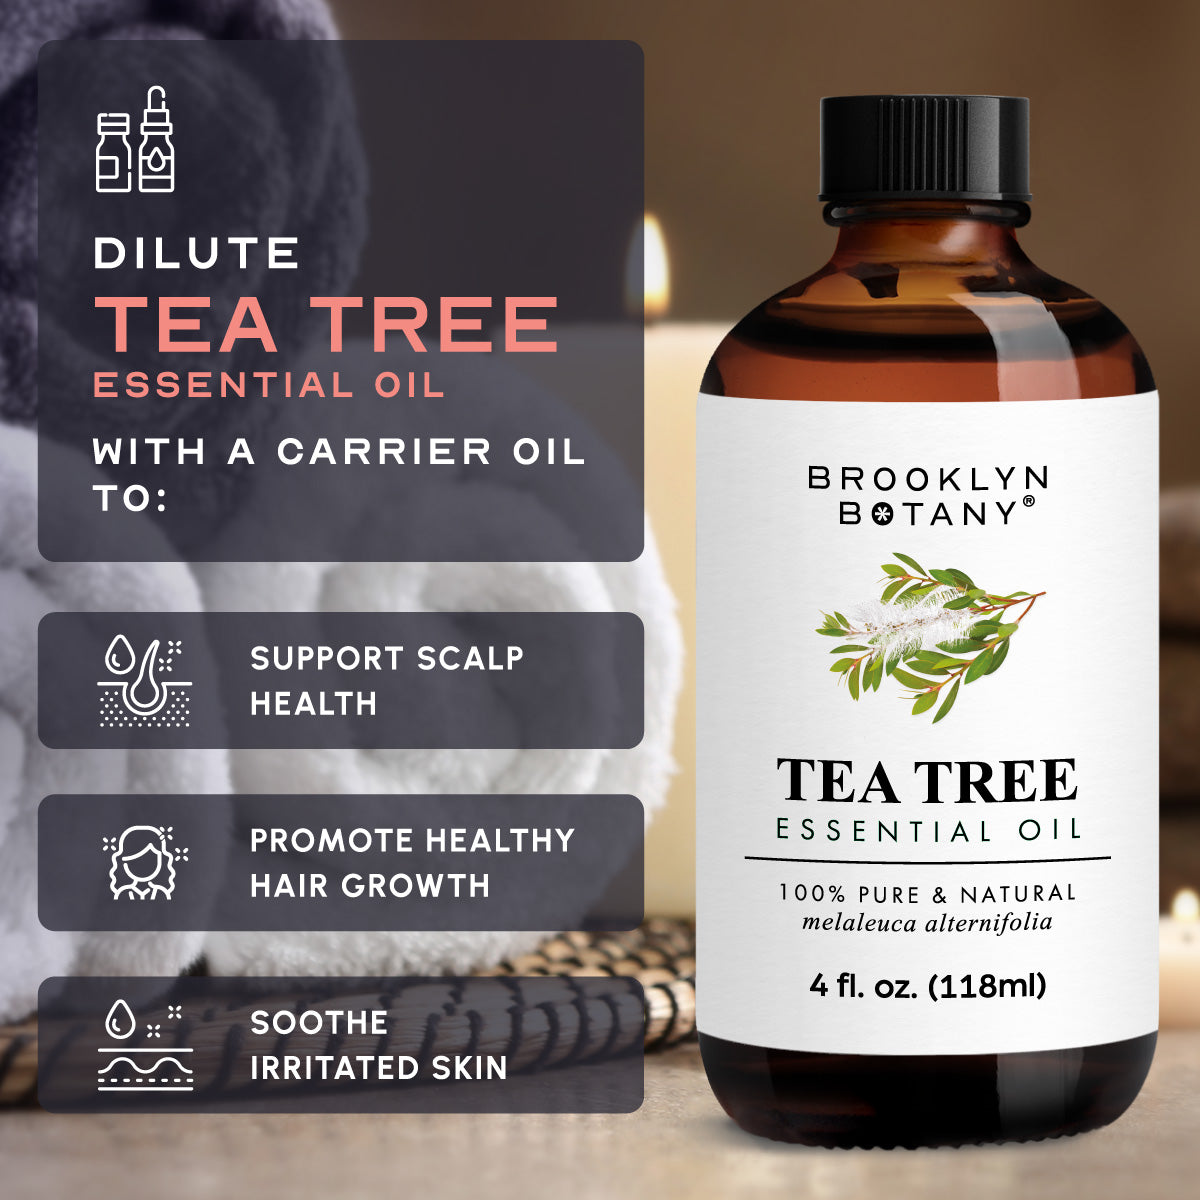 How to Dilute Tea Tree Oil